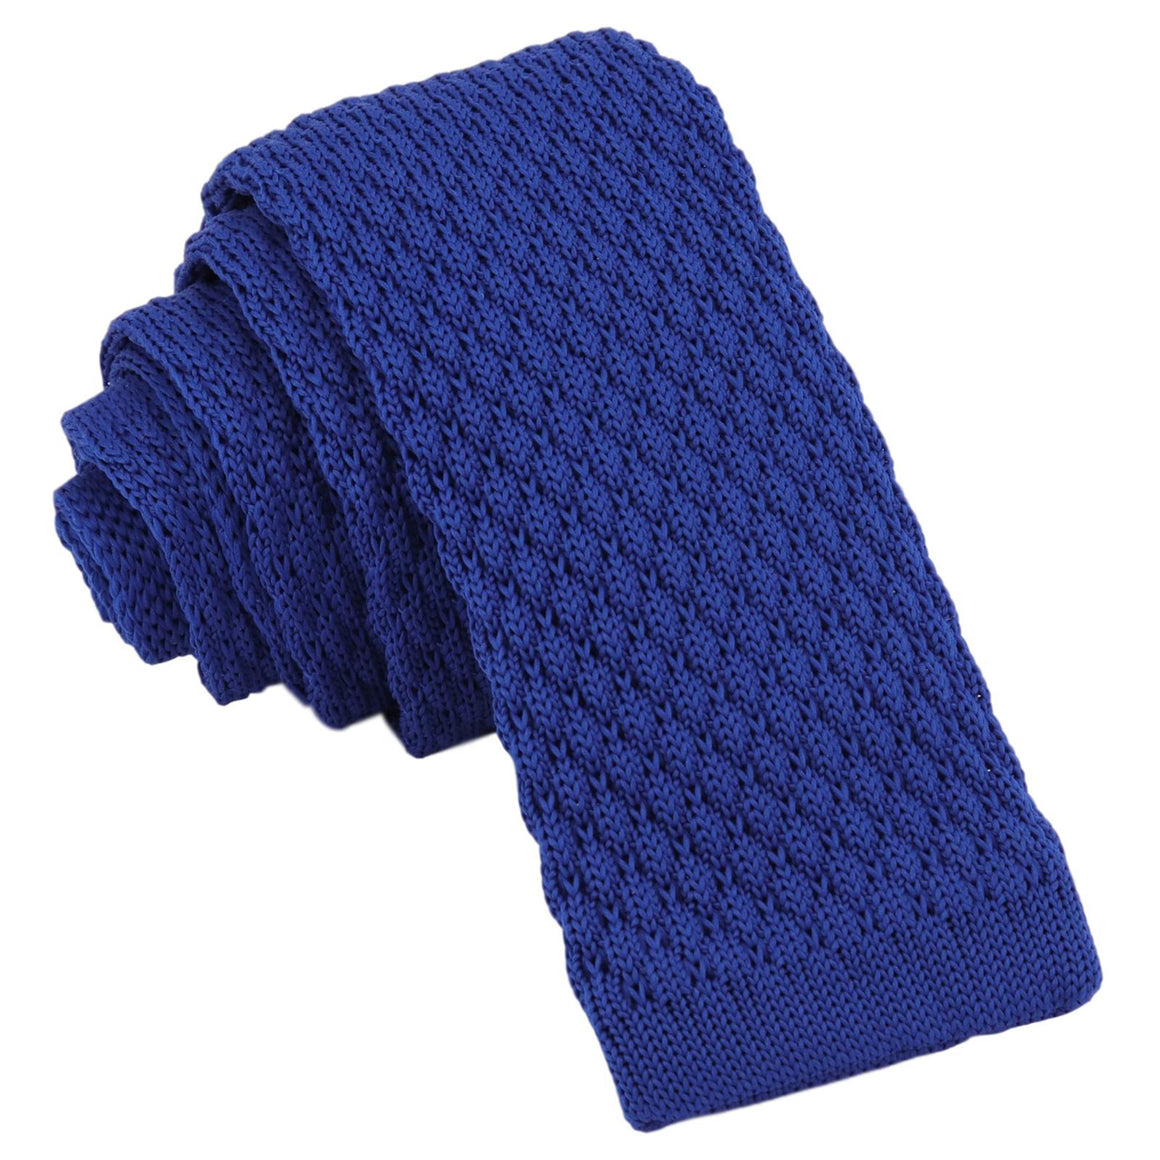 GASSANI 6cm úzká královská modrá pánská pletená kravata, vlněná kravata rovného střihu